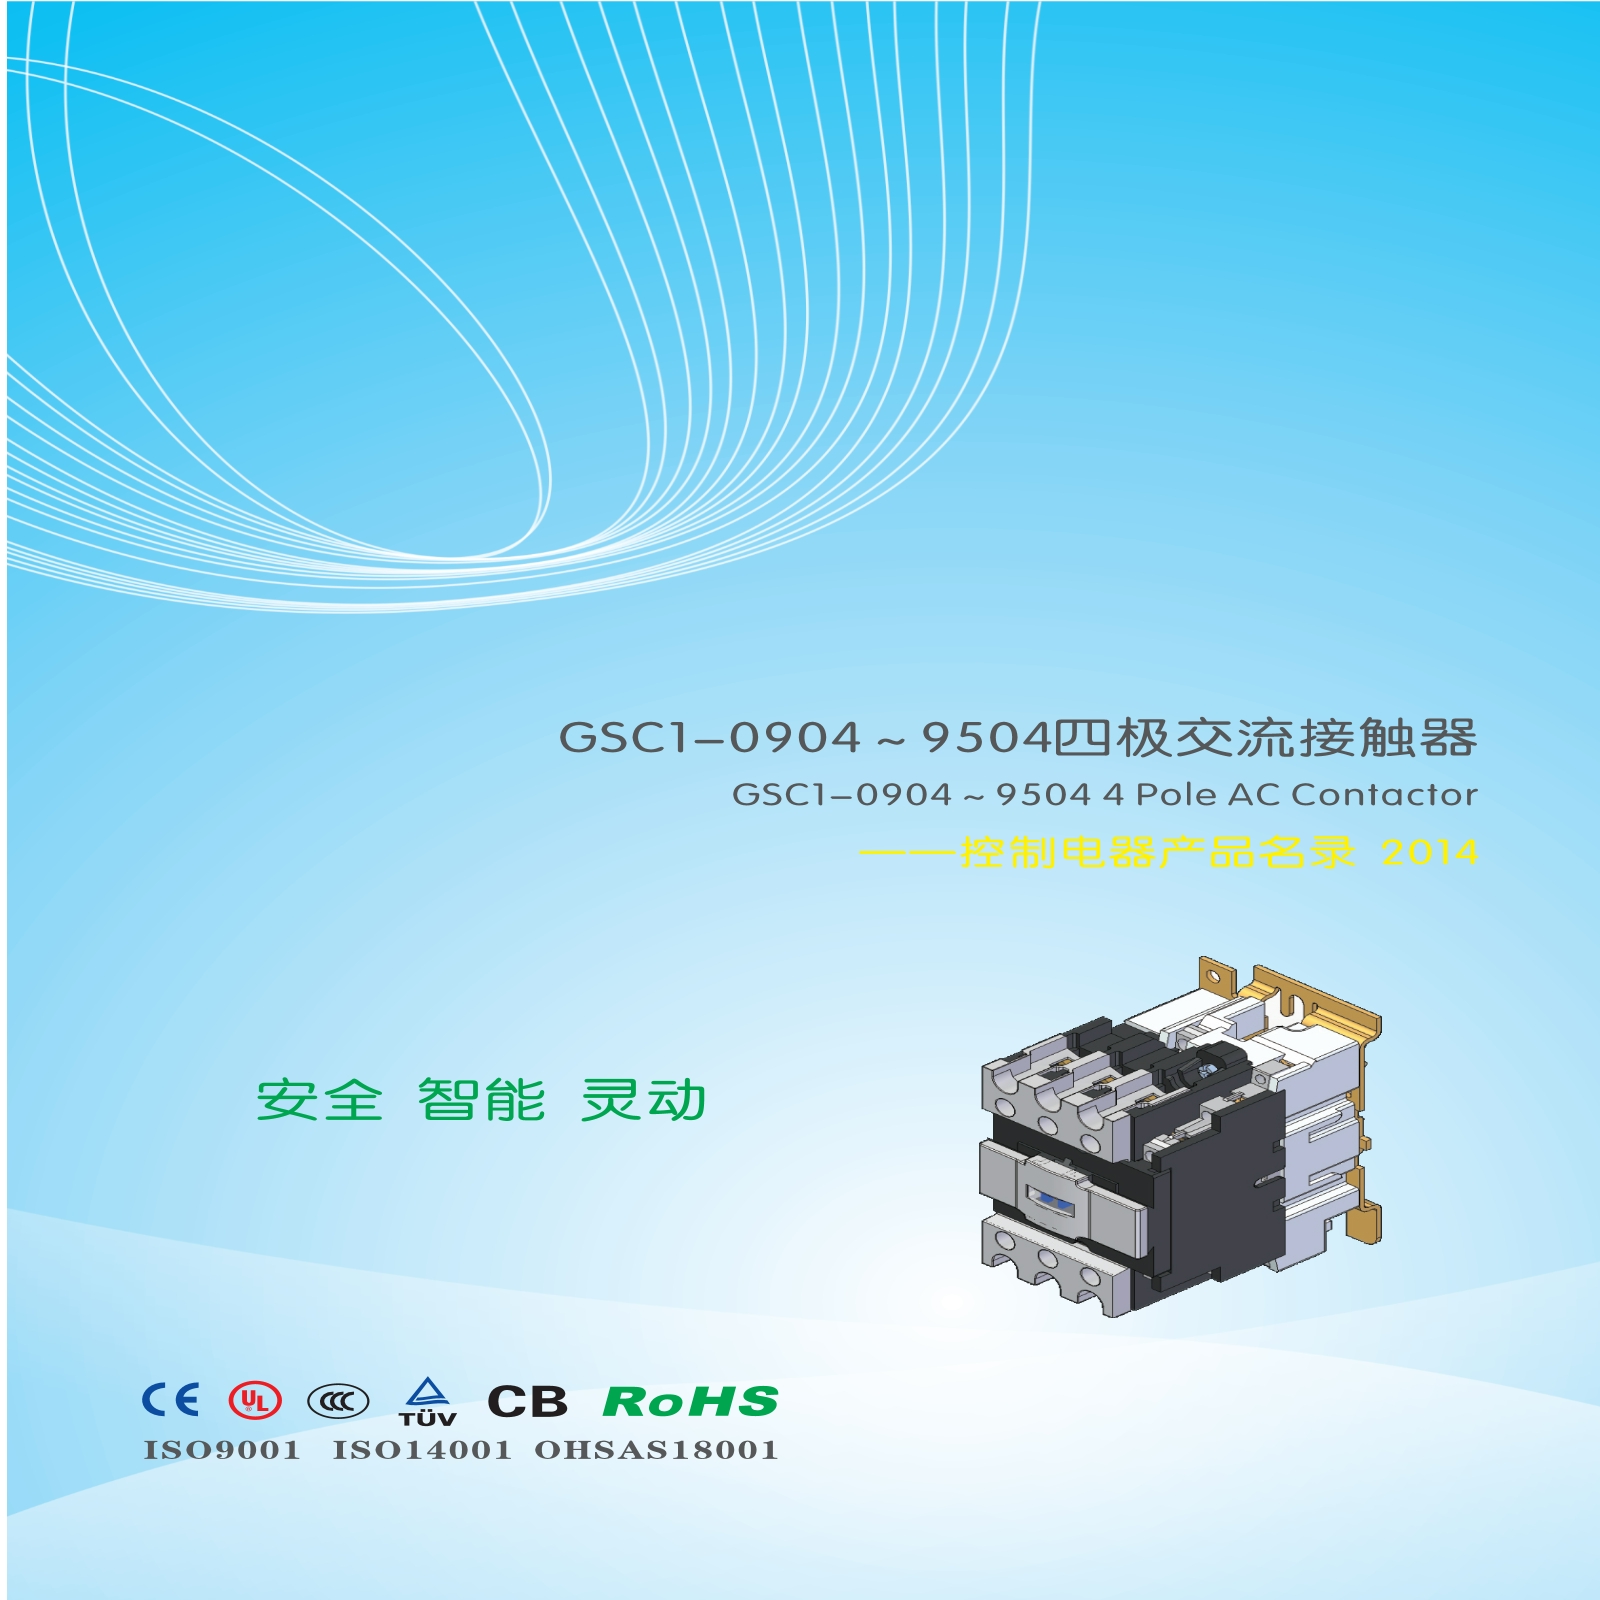 GSC1-0904～9504四极交流接触器